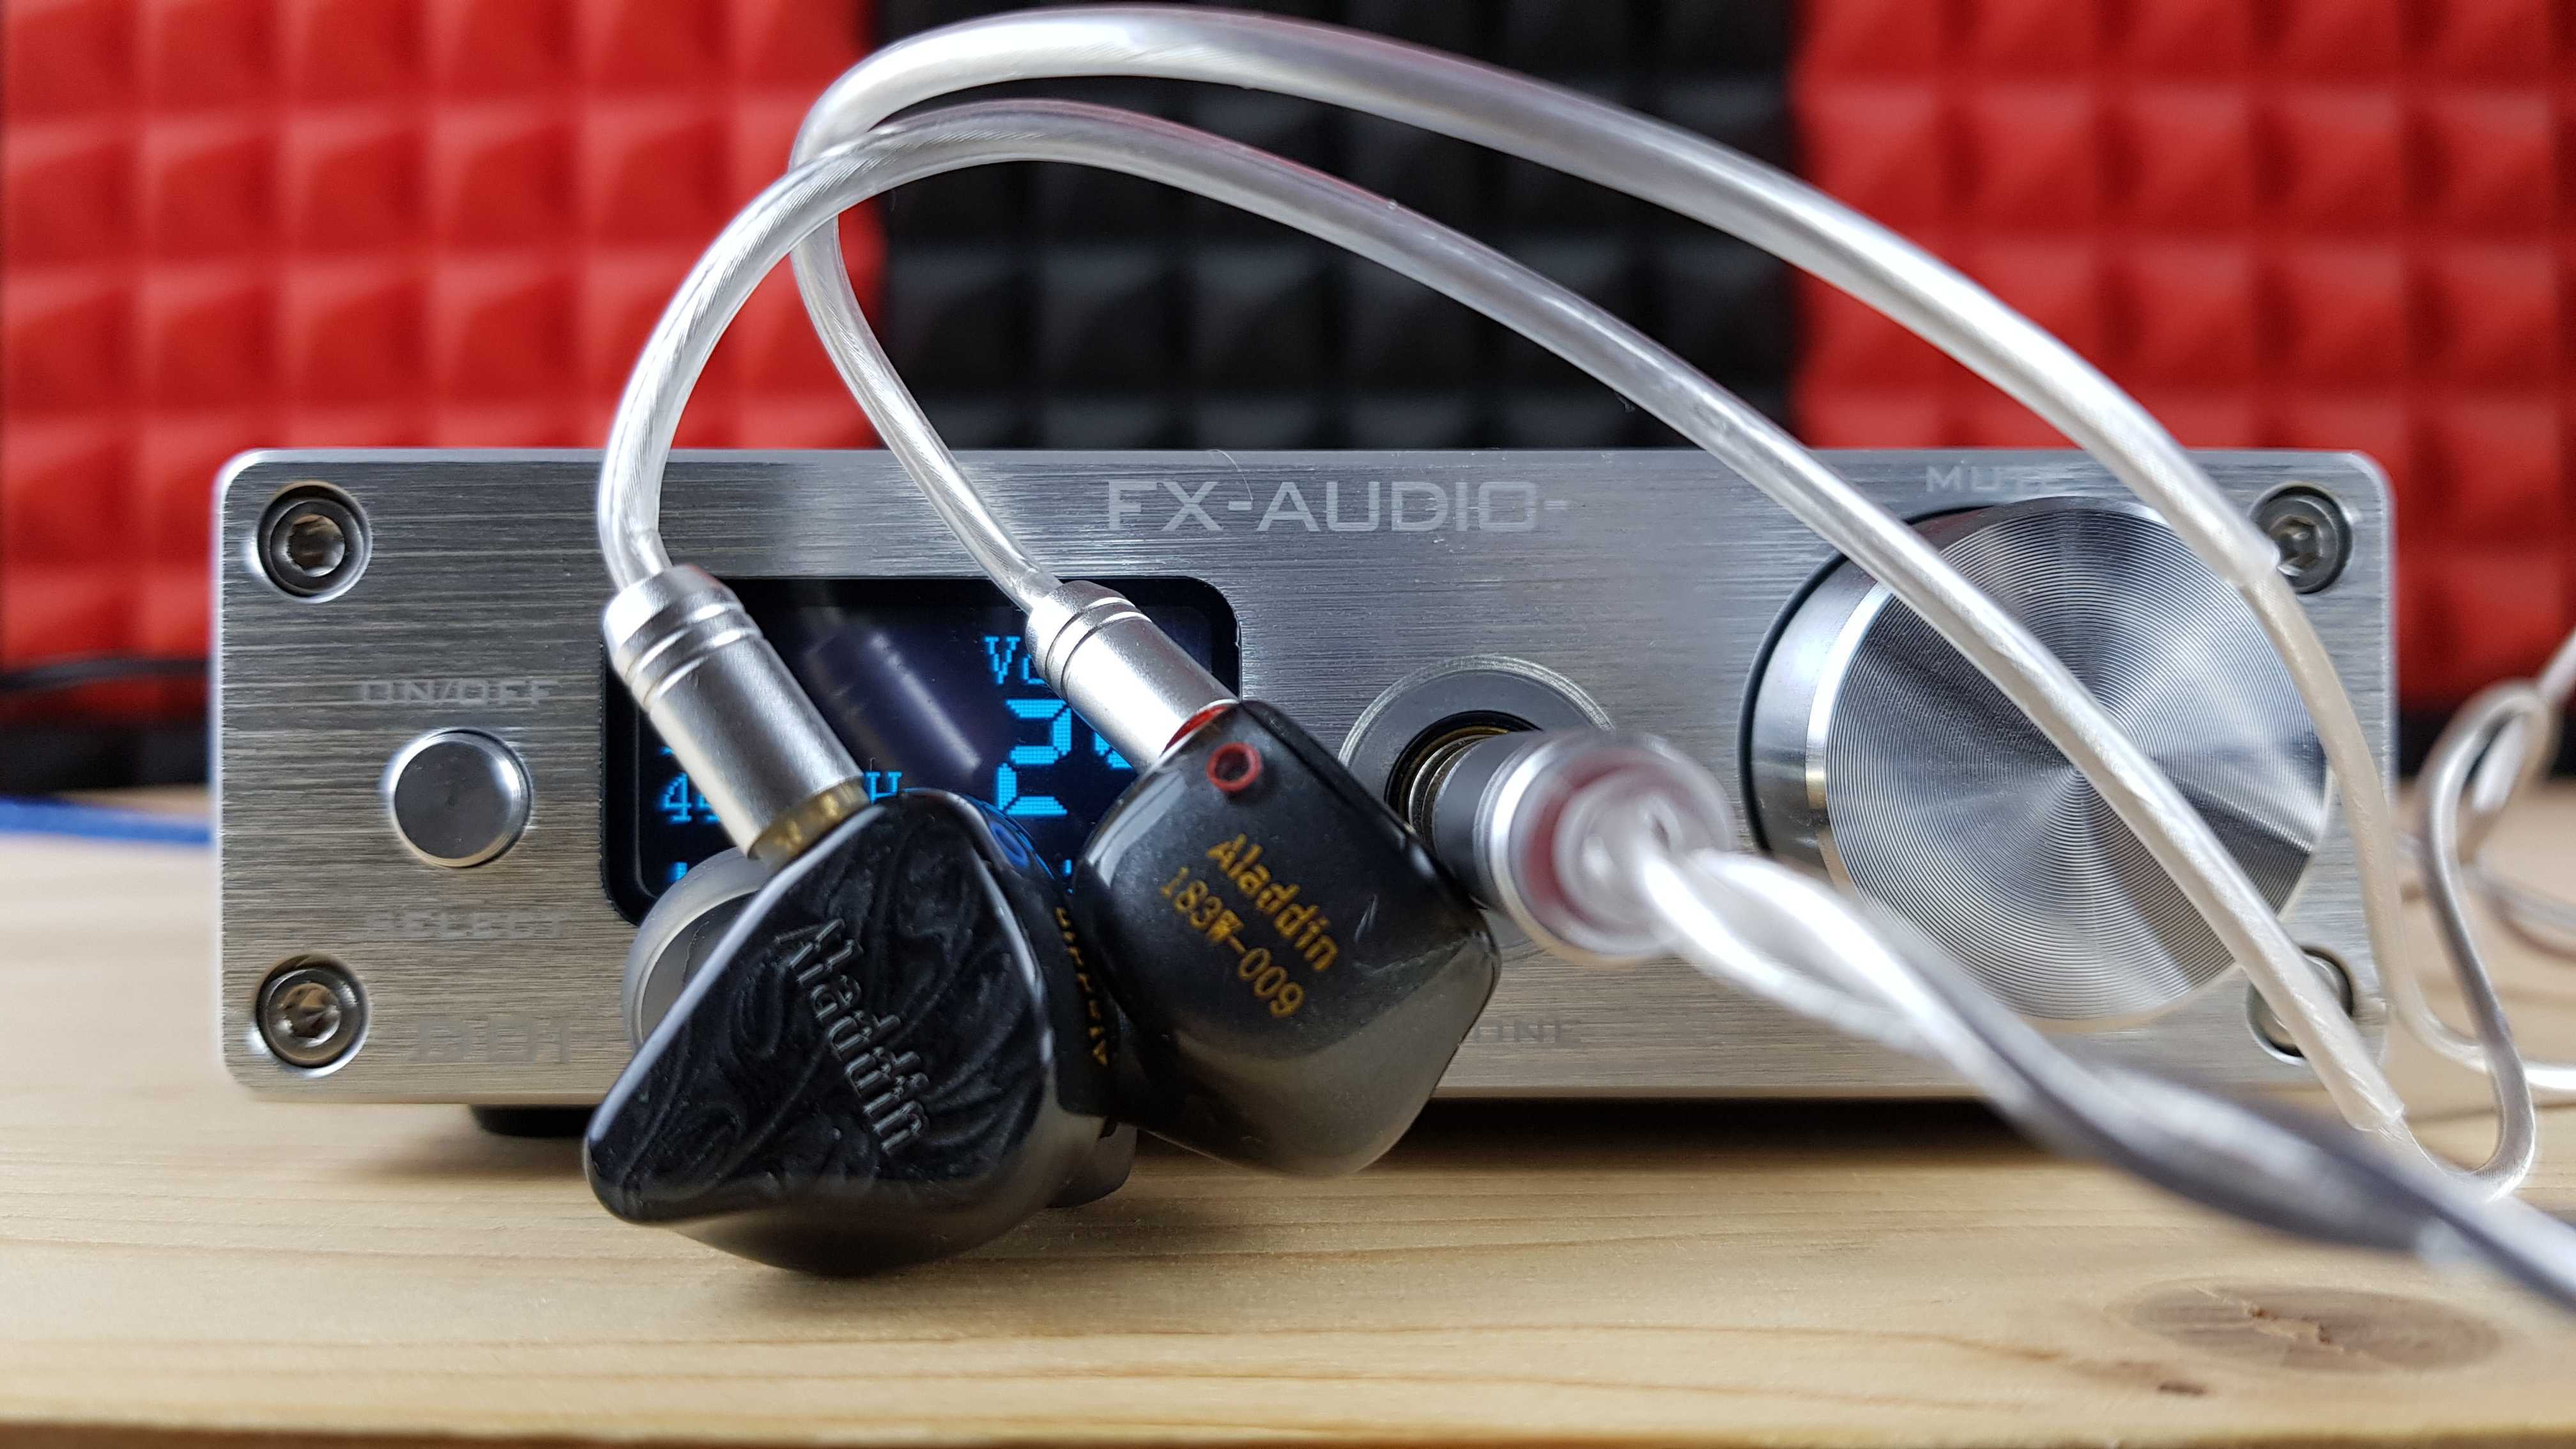 Fx audio dac x6 обзор отзыв сравнение с breeze audio es9018k2m и m audio fast track ultra замер ачх